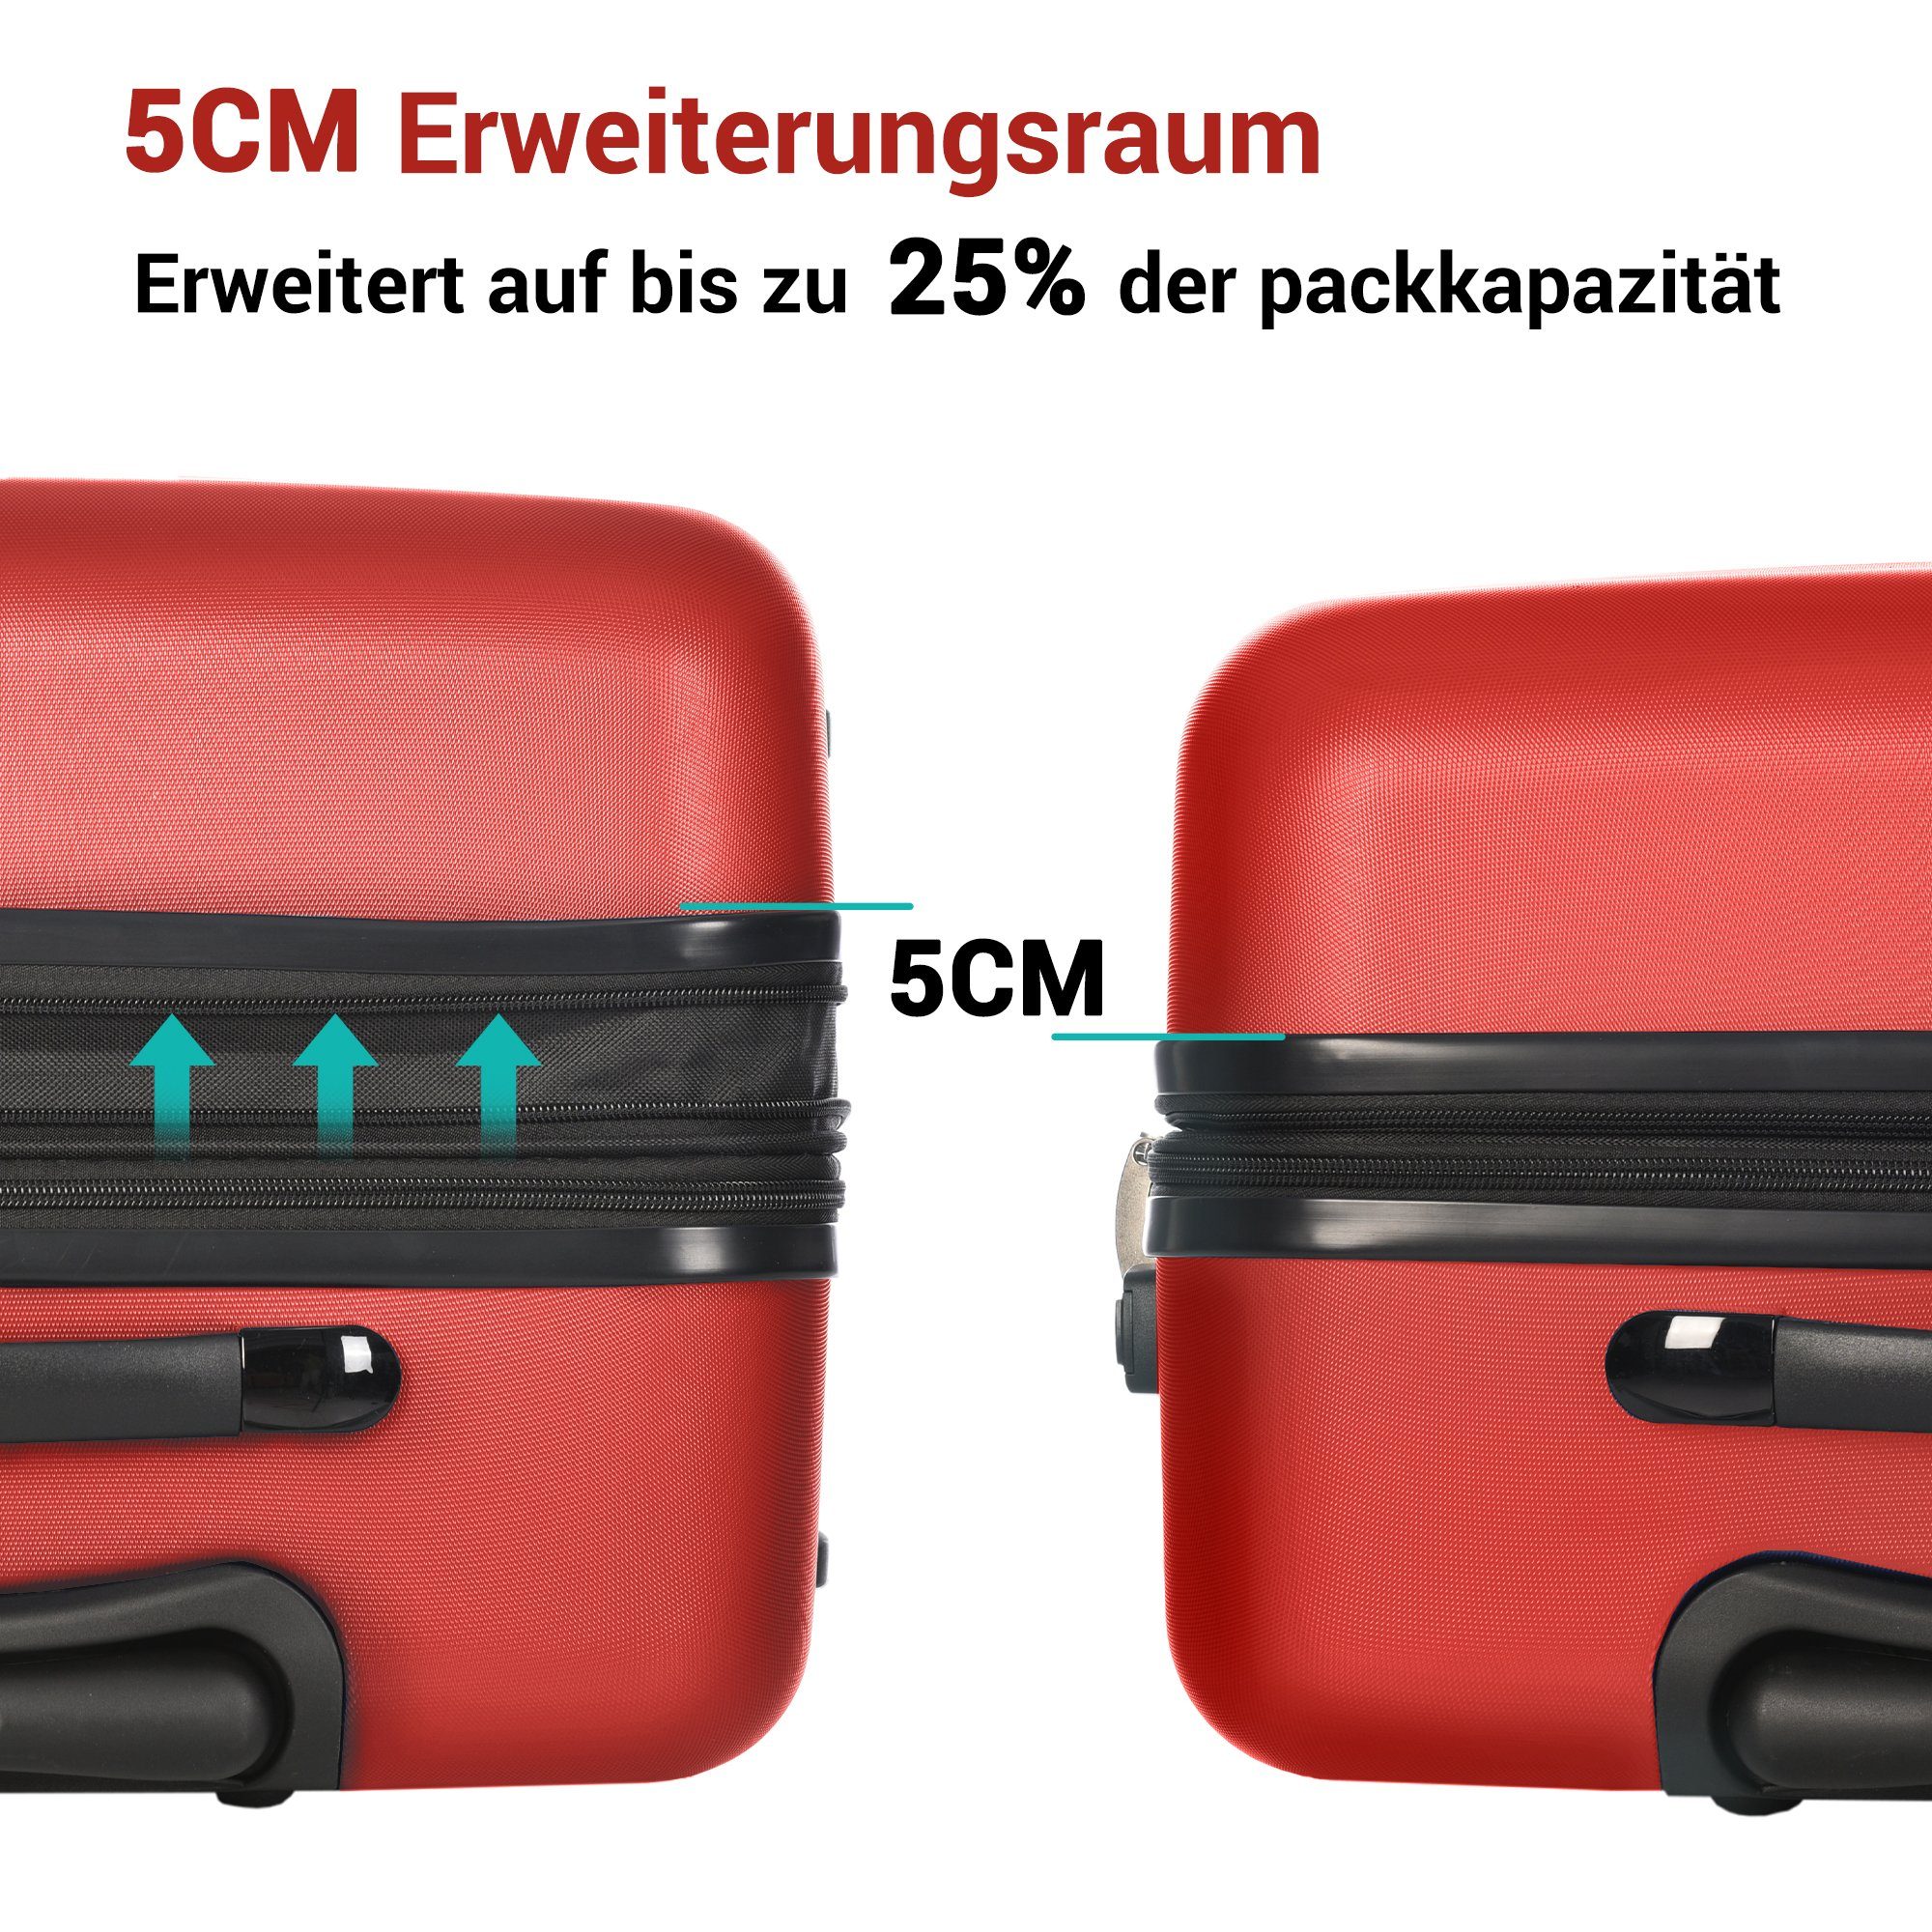 Sweiko Hartschalen-Trolley, Rollen, 51*32*75cm Rot Zahlenschloss, und 4 360°-Schwenkrollen Koffer mit